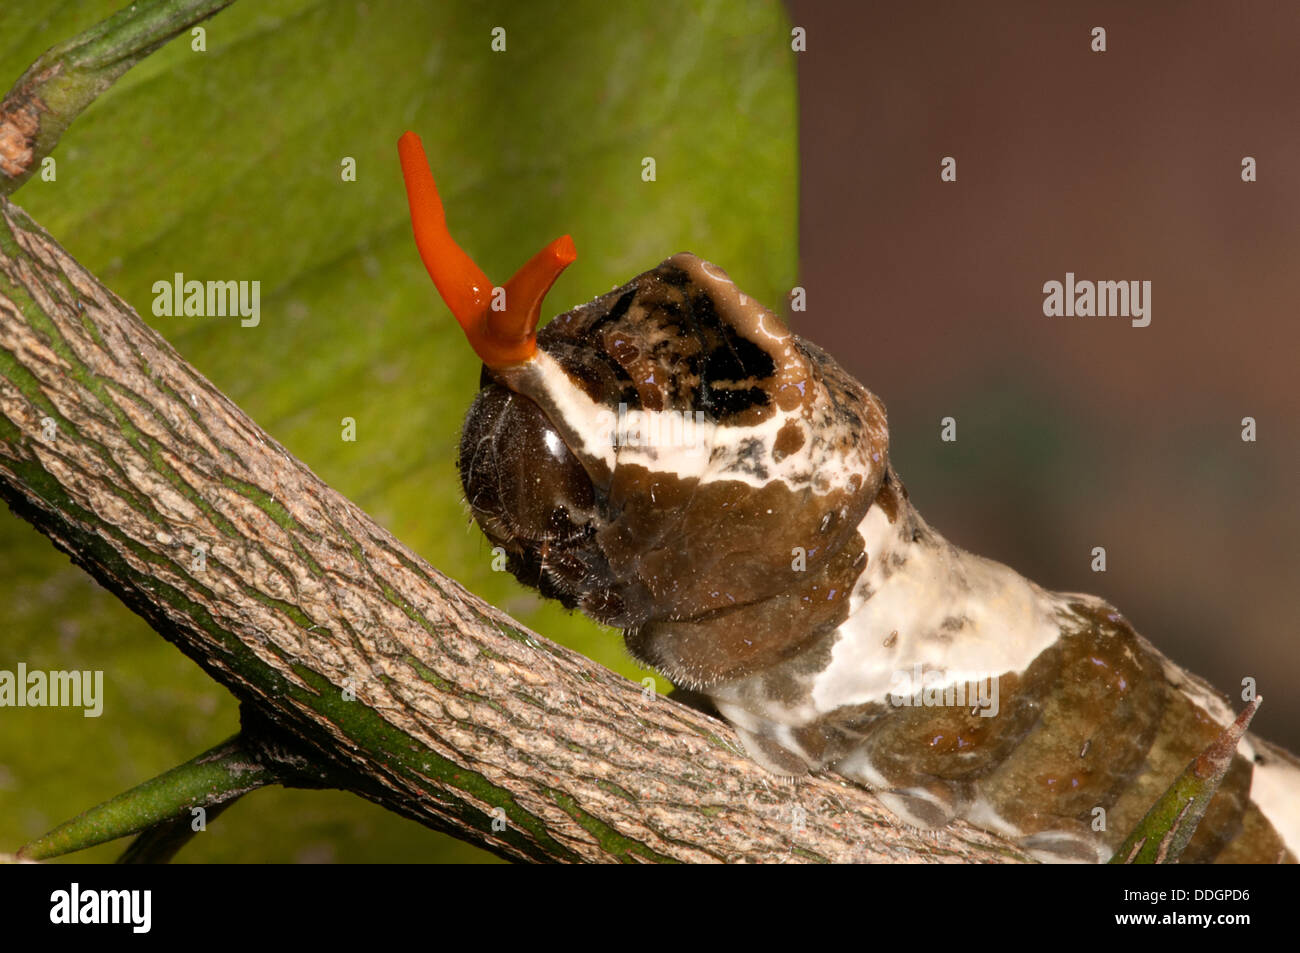 La coppia caterpillar assomiglia ad escrementi di volatili per dissuadere i predatori, e se non funziona possono utilizzare il loro osmeterium rosso. Foto Stock